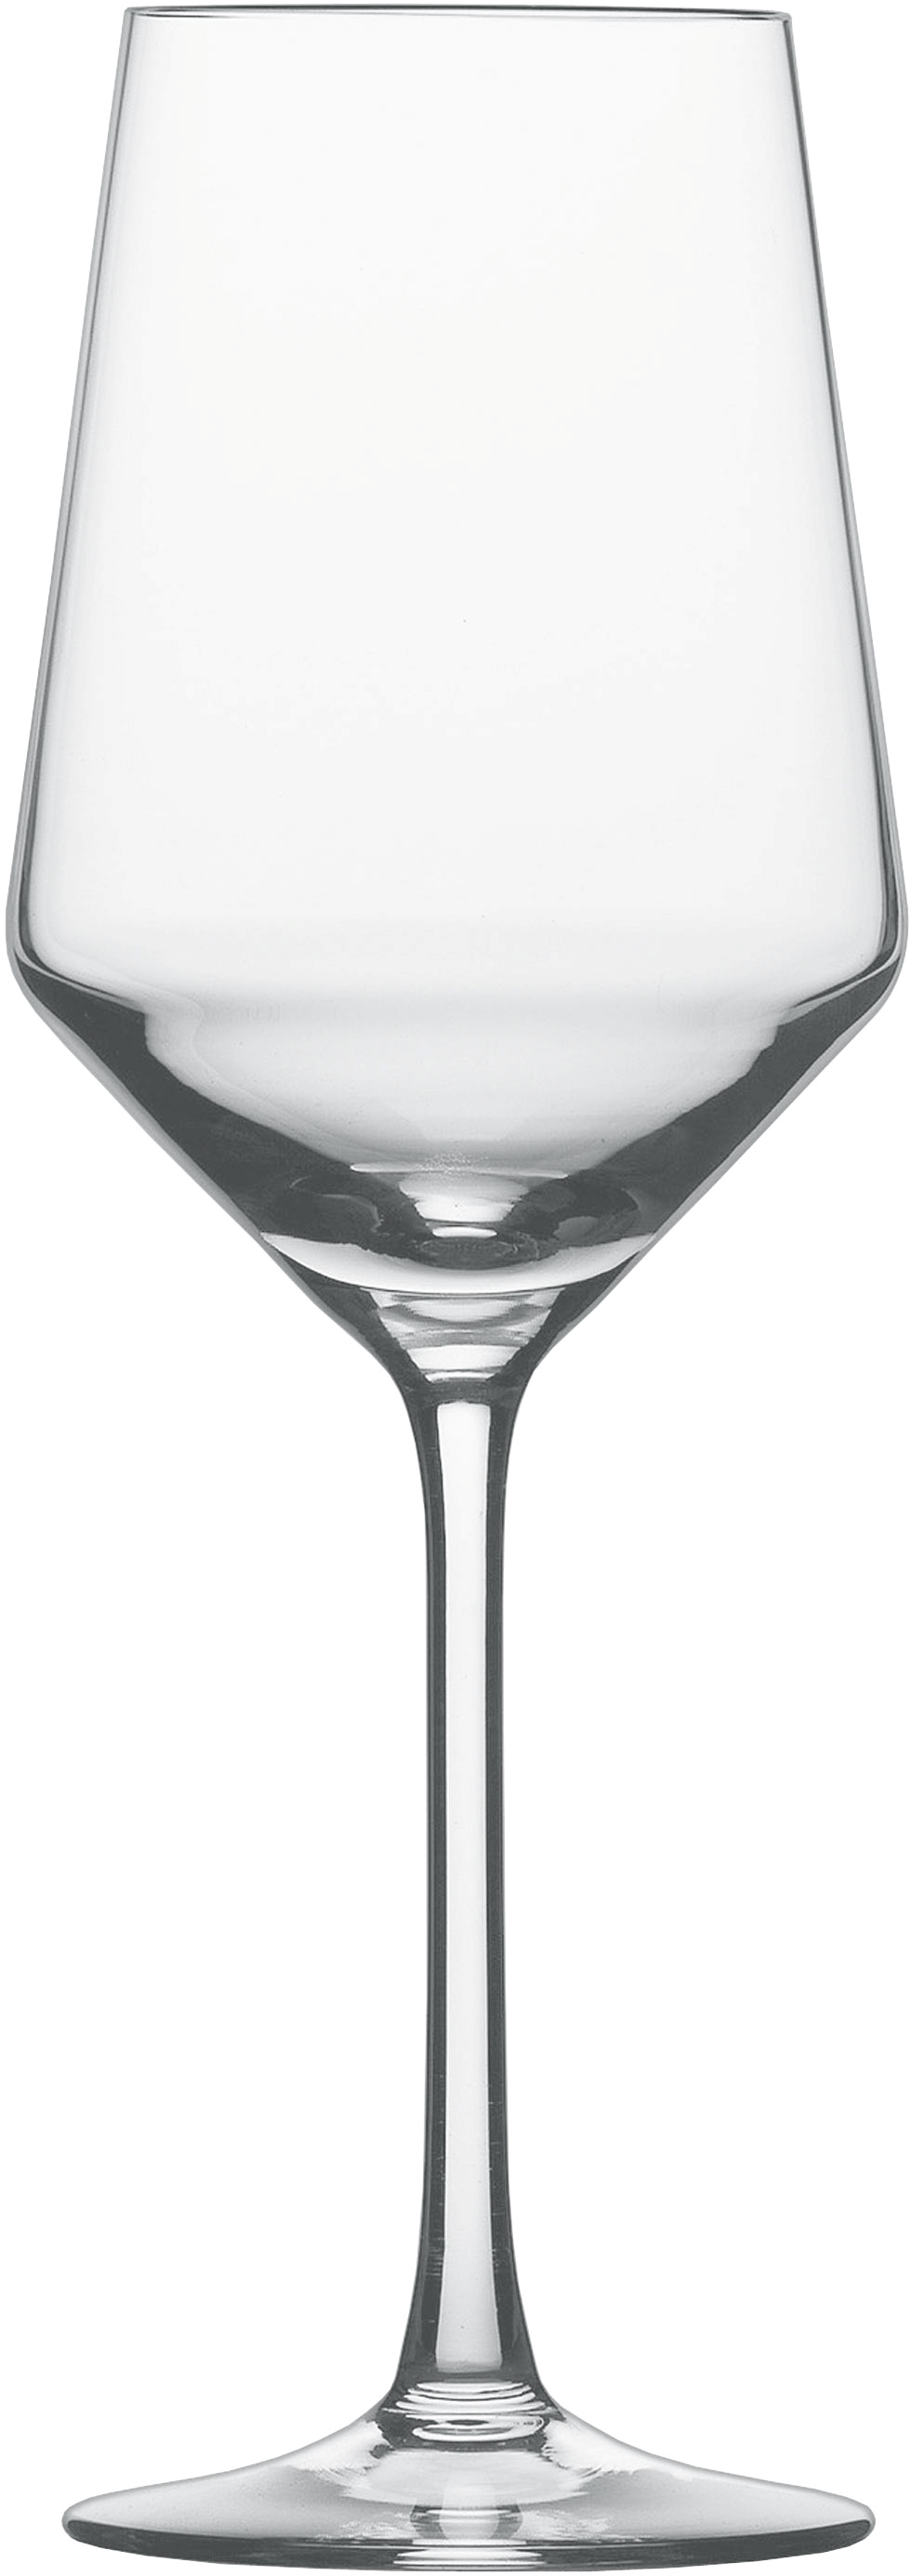 Pure kozarec sauvignon blanc 408ml